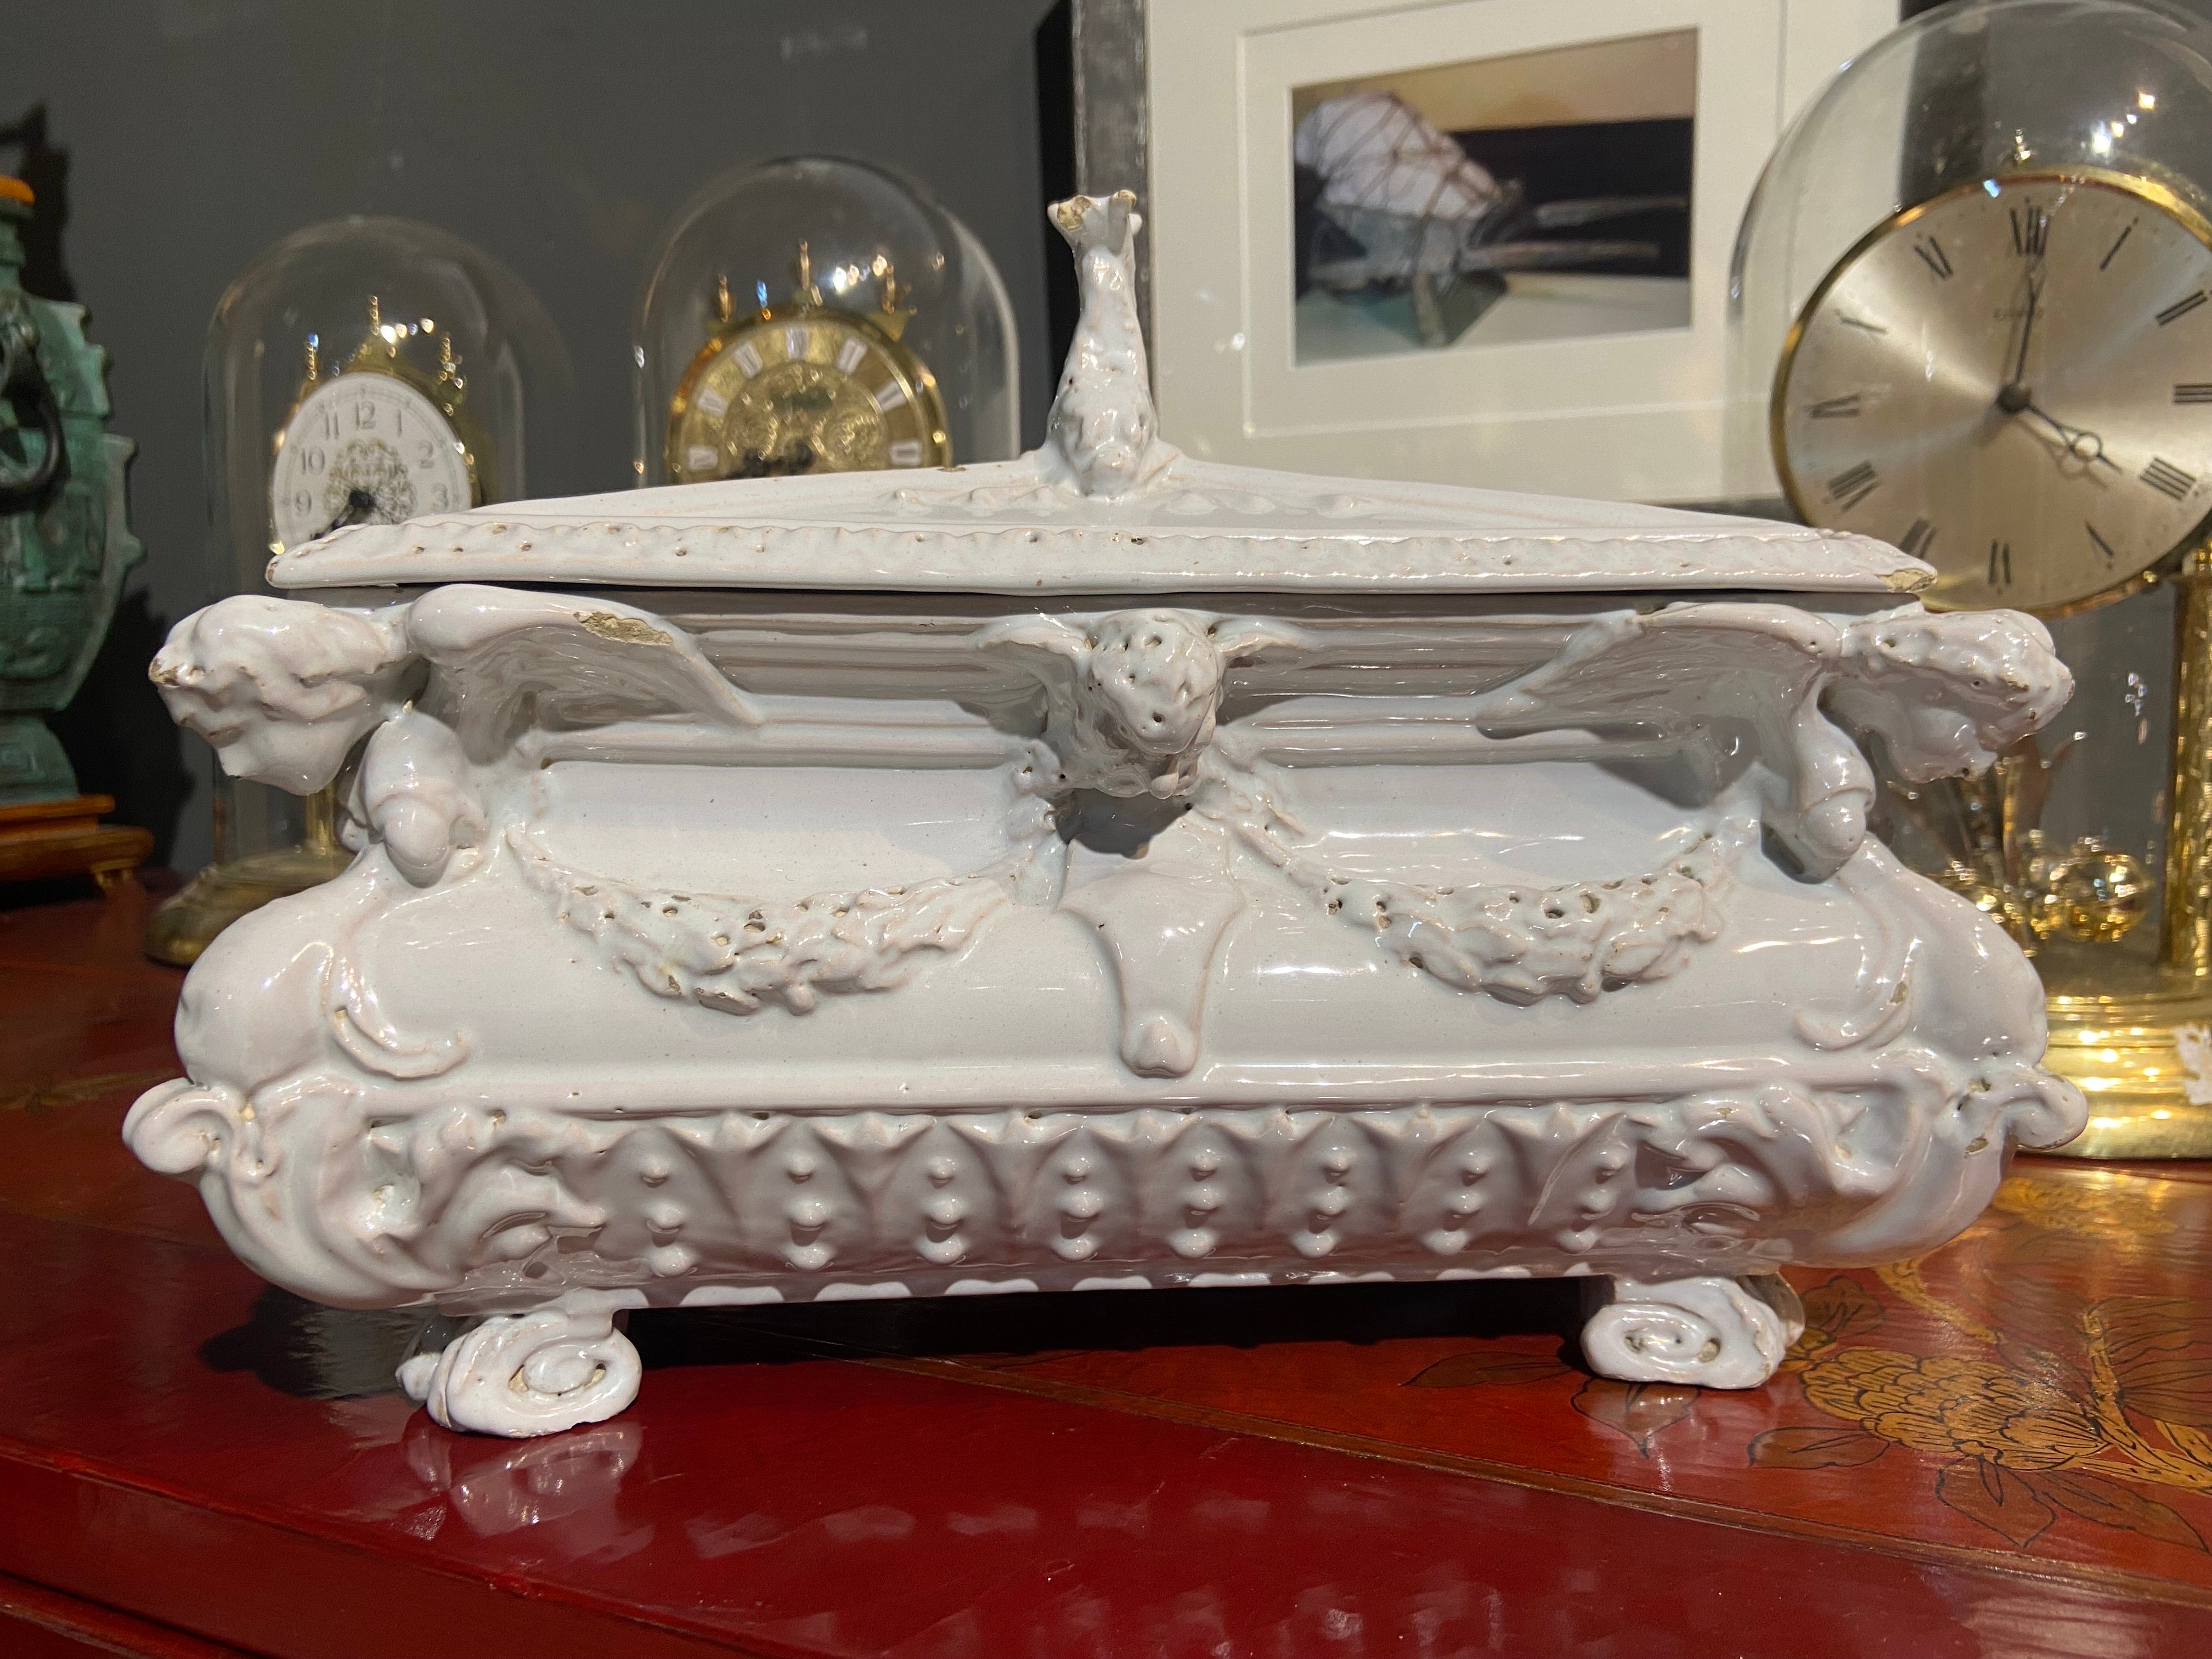 Rare centre de table en céramique avec des décorations étonnantes et des dauphins sur le dessus, fait à la main en fine céramique blanche. Très bon état sans aucune restauration.
France, vers 1880.